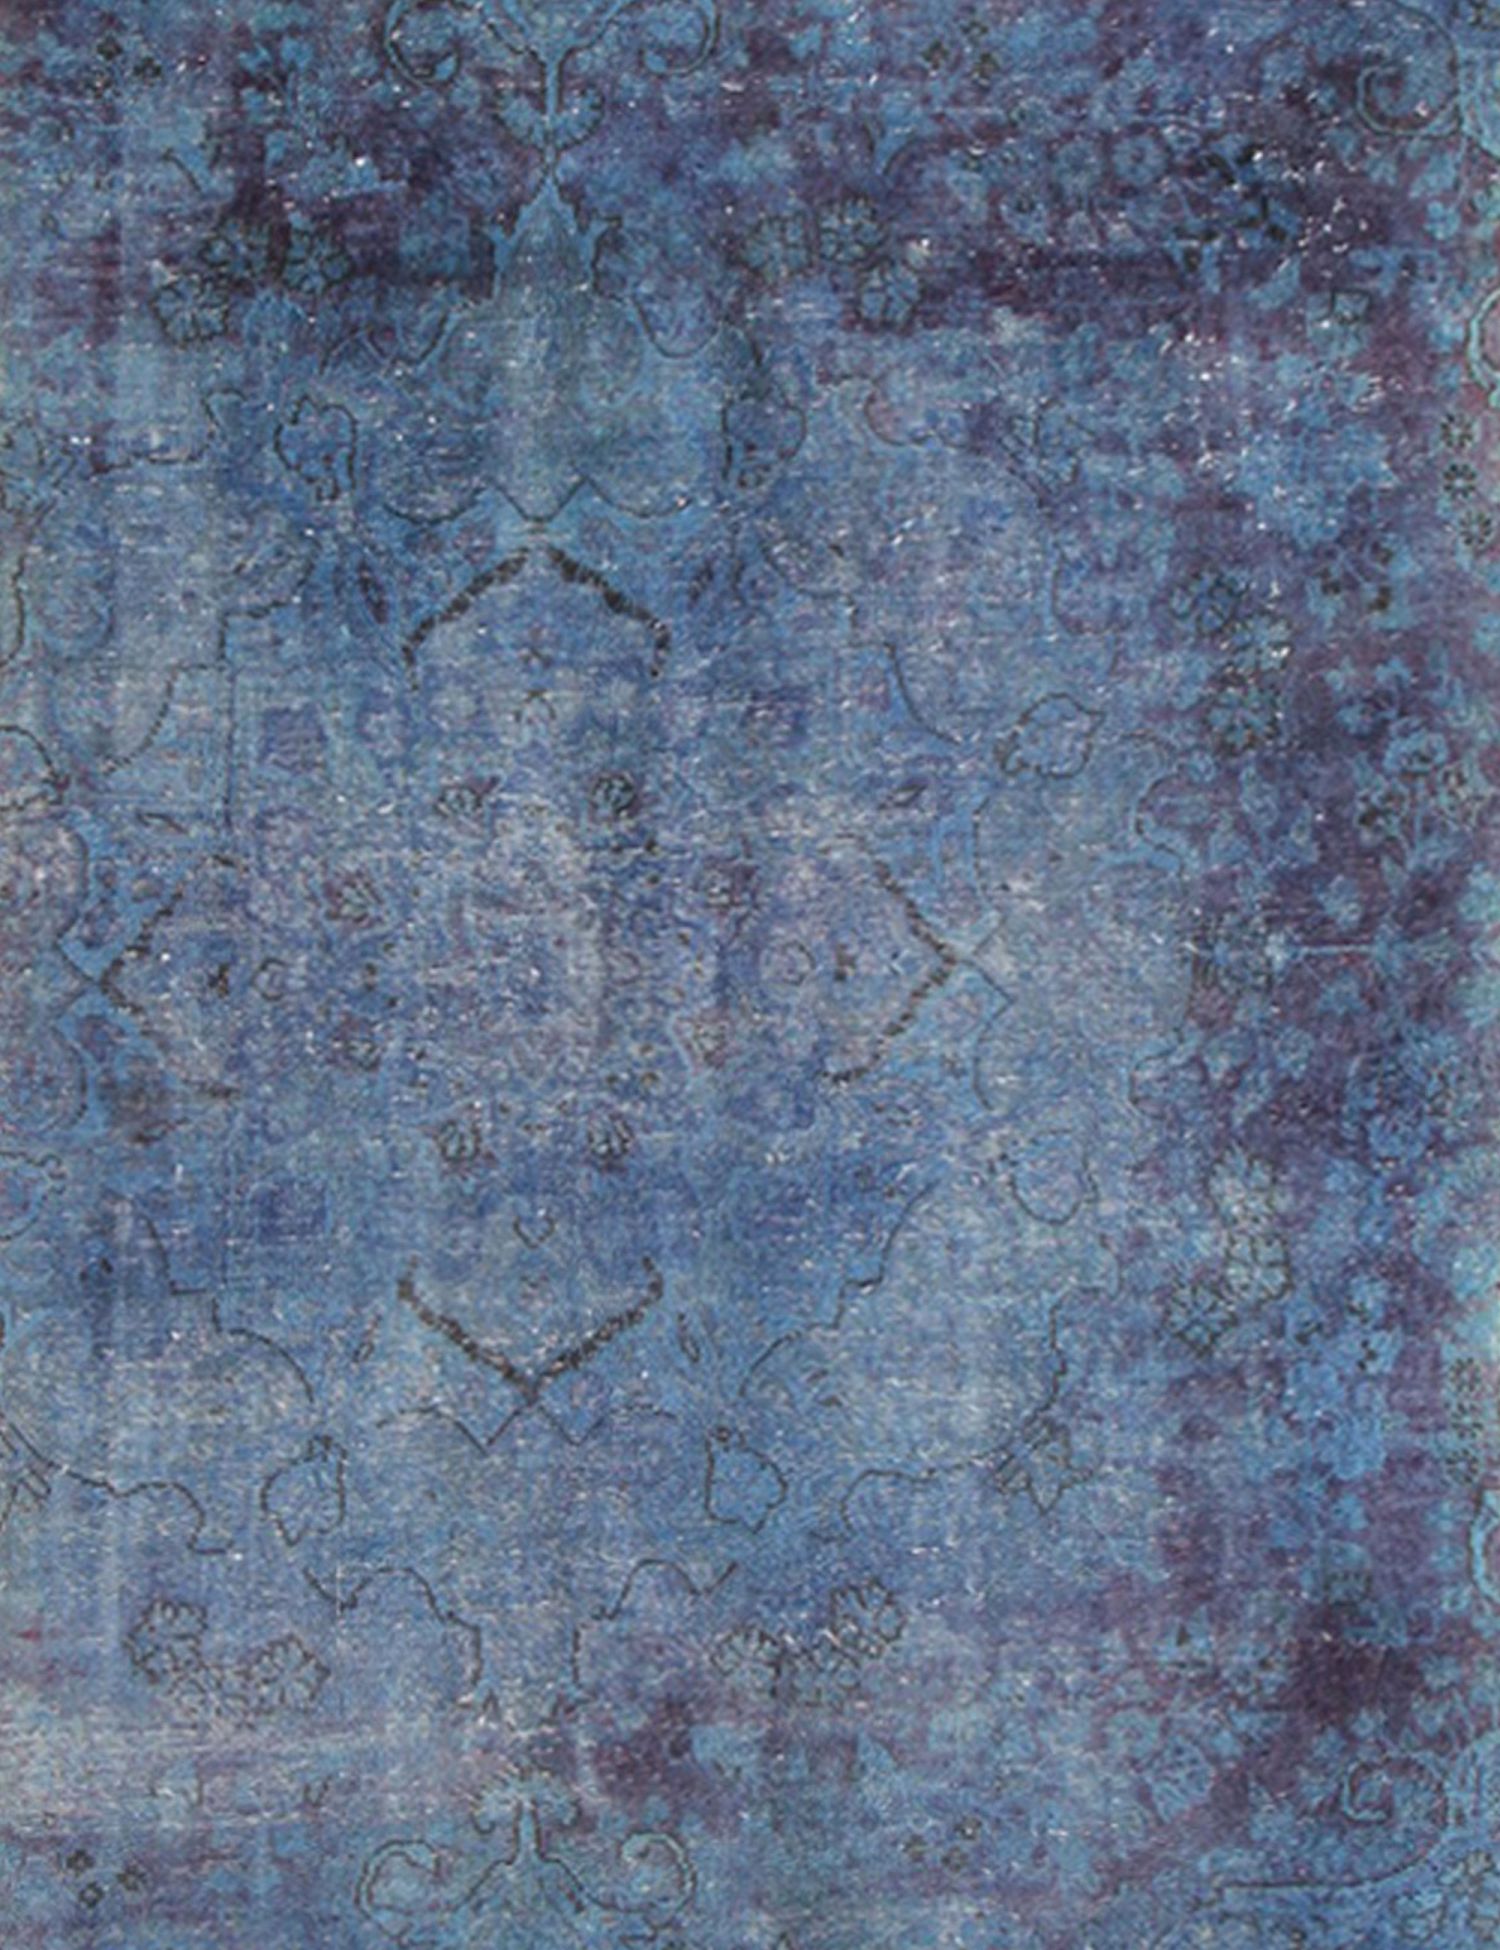 Persian Vintage Carpet  blue <br/>280 x 125 cm